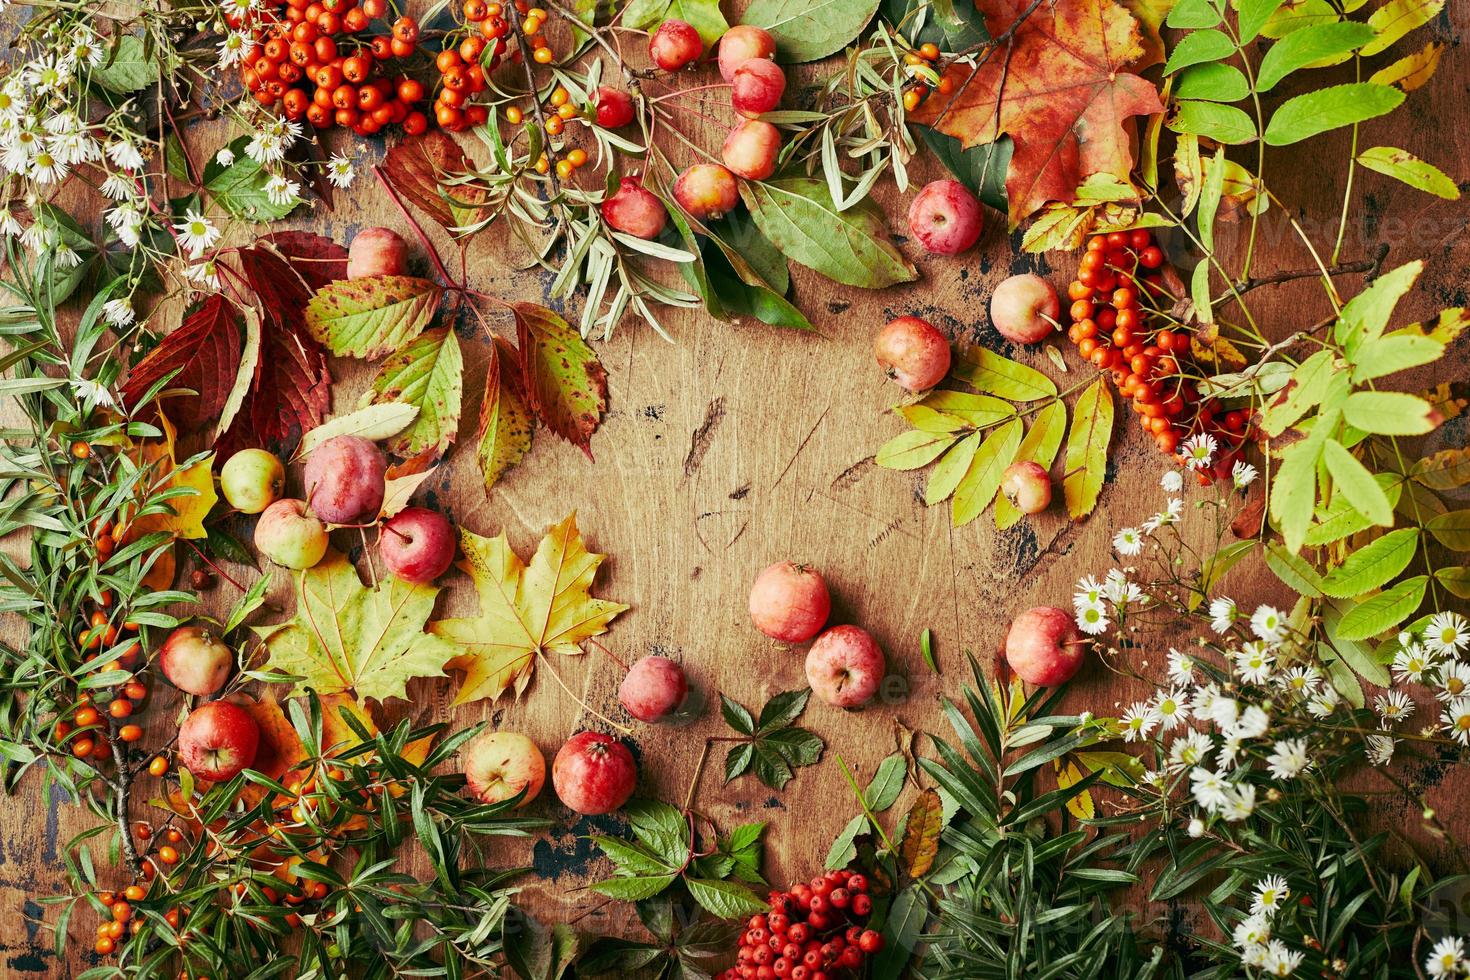 bagas vermelhas de rowan, maçãs pequenas, espinheiro marítimo, galhos de uvas selvagens, folhas de bordo e flores silvestres brancas de outono. fundo de outono, colher ainda vida na placa de madeira. foto